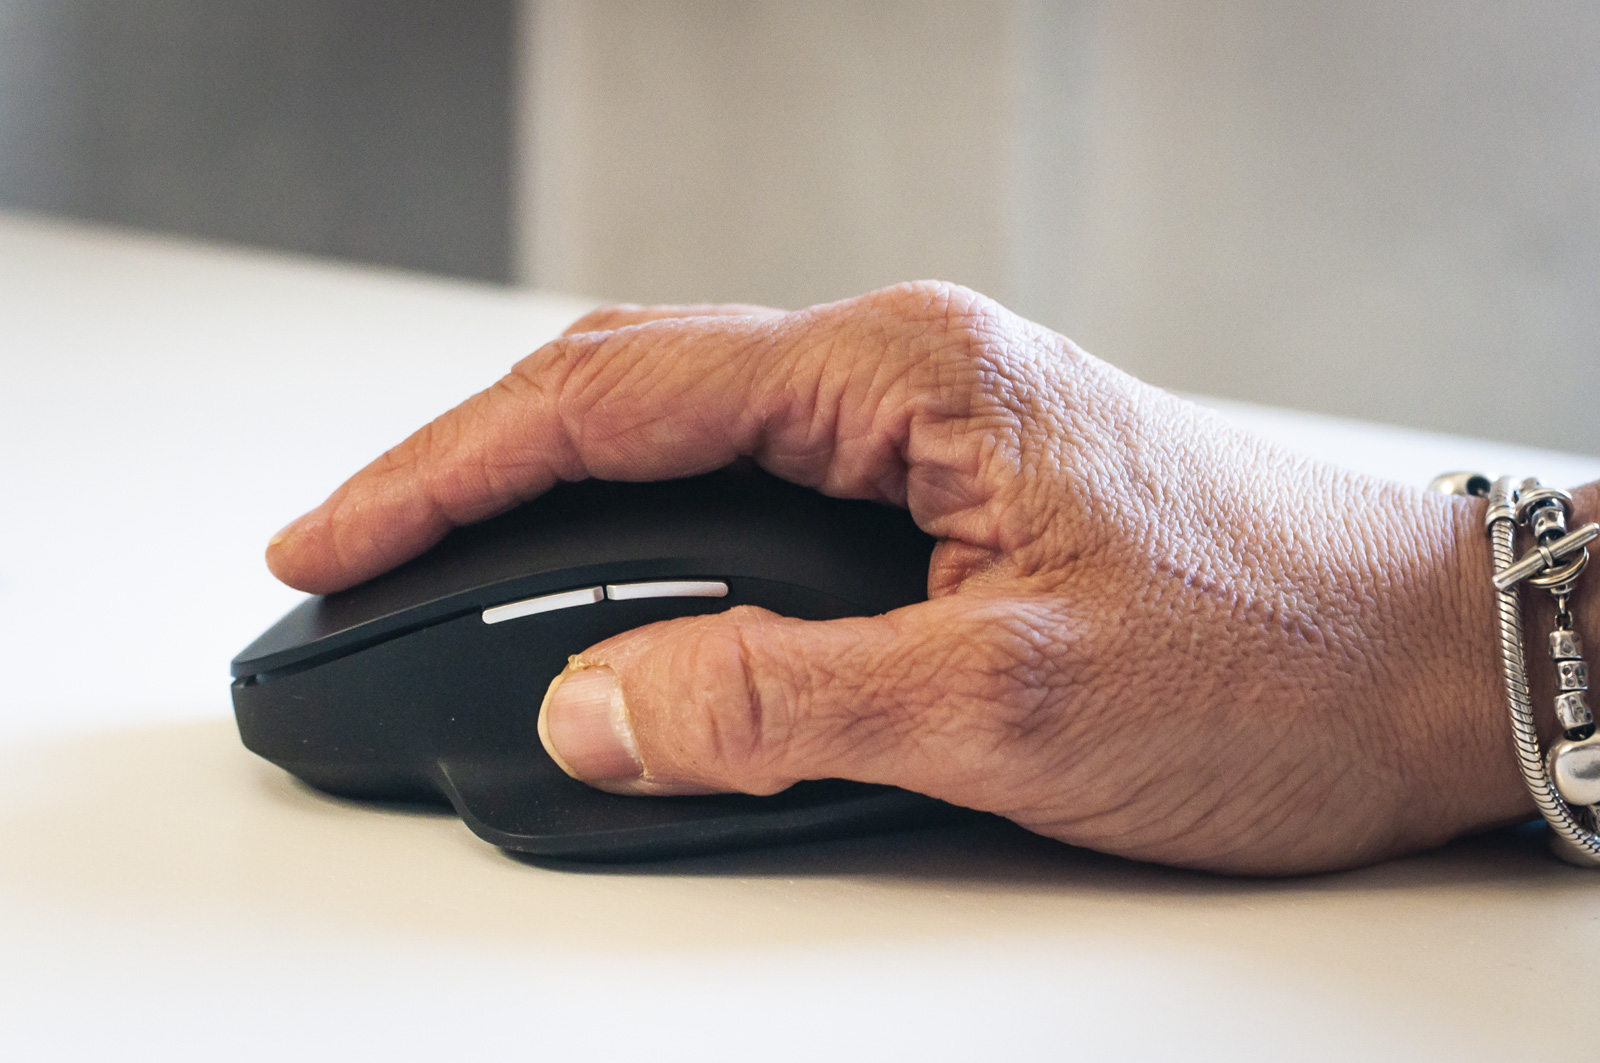 Recensione Microsoft Bluetooth Ergonomic Mouse, accessorio business fatto come si deve